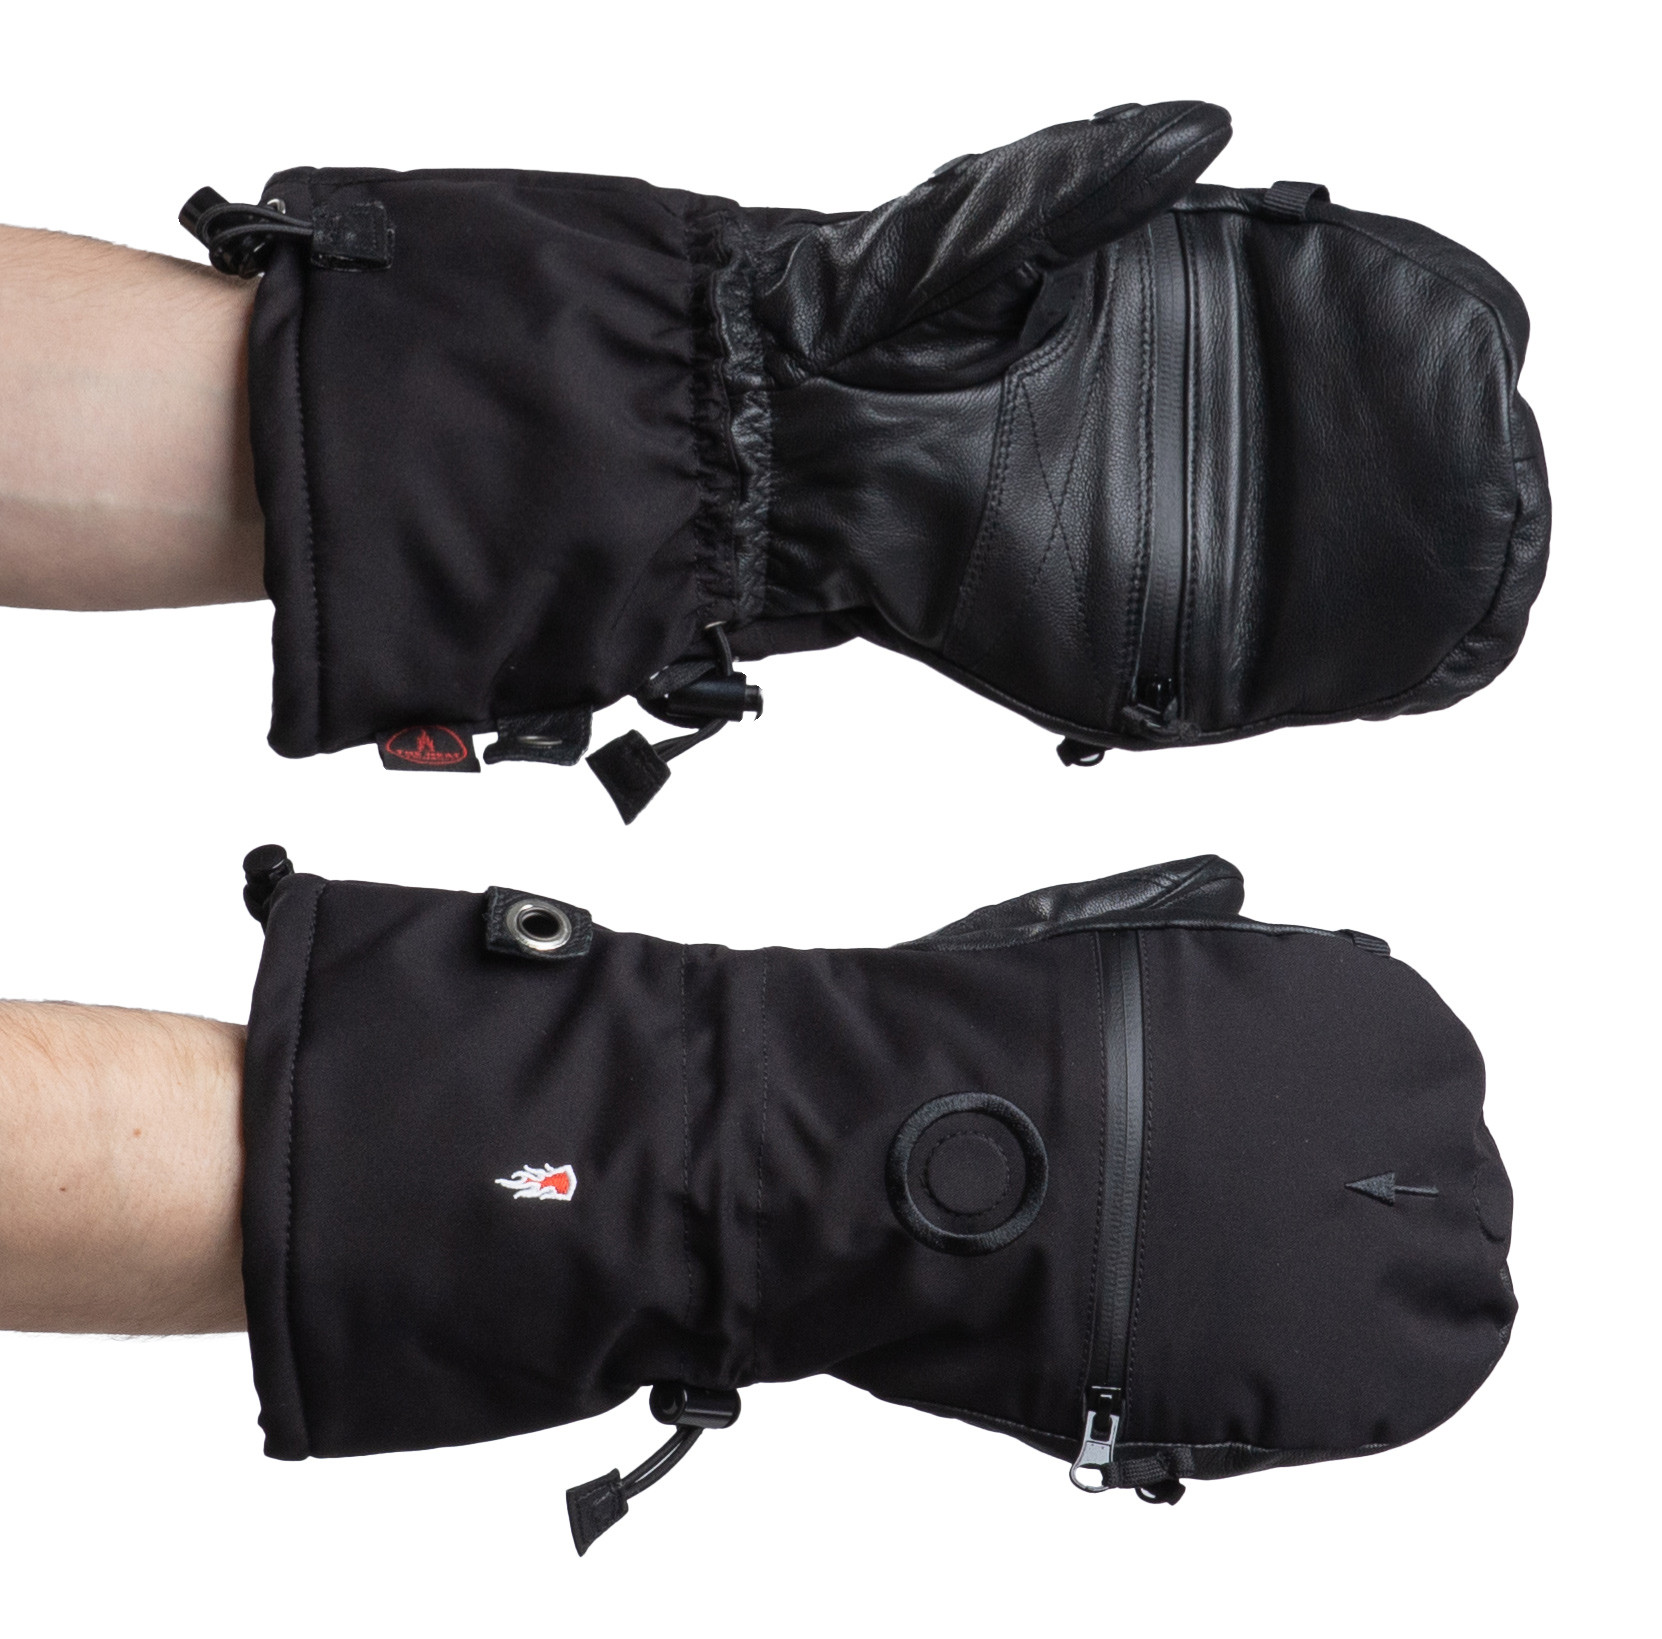 The Heat Company Gants Heat 3 Smart (noir) - Gants & écharpes - Vêtements  de chasse homme - Textile - boutique en ligne 